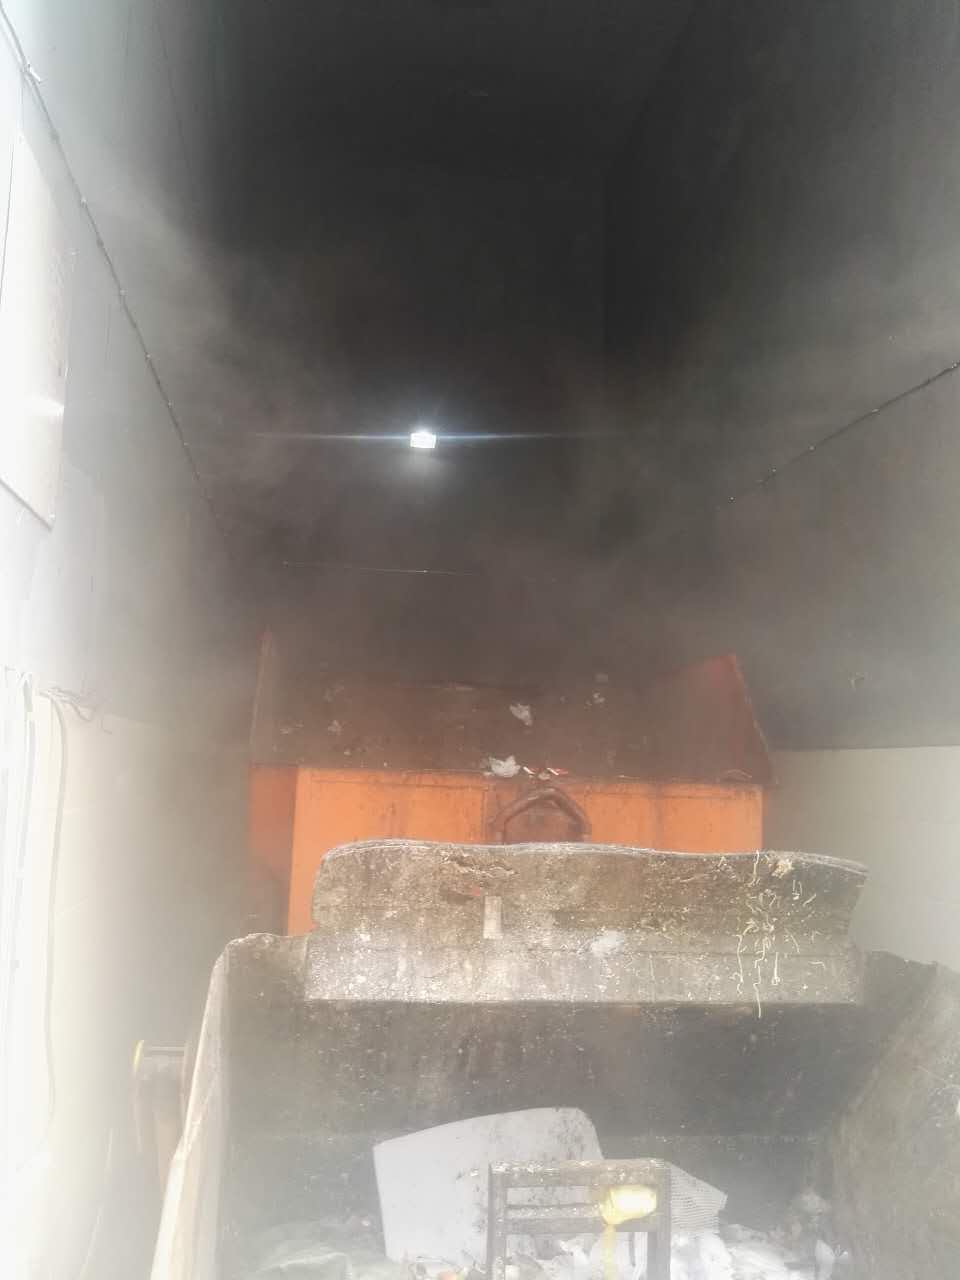 广州垃圾站喷雾除臭设备